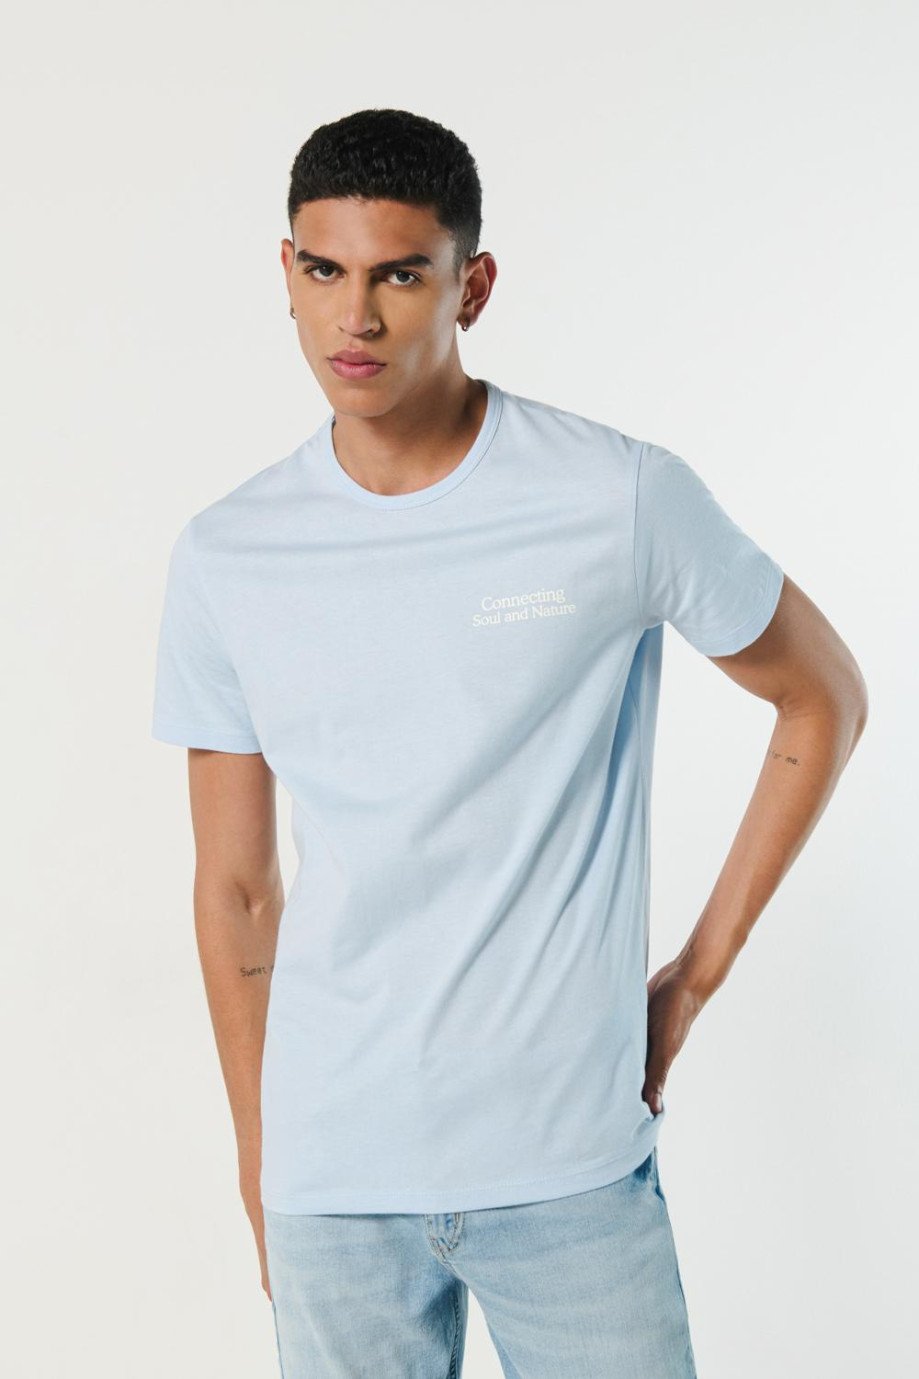 Camiseta manga corta azul clara con texto minimalista blanco